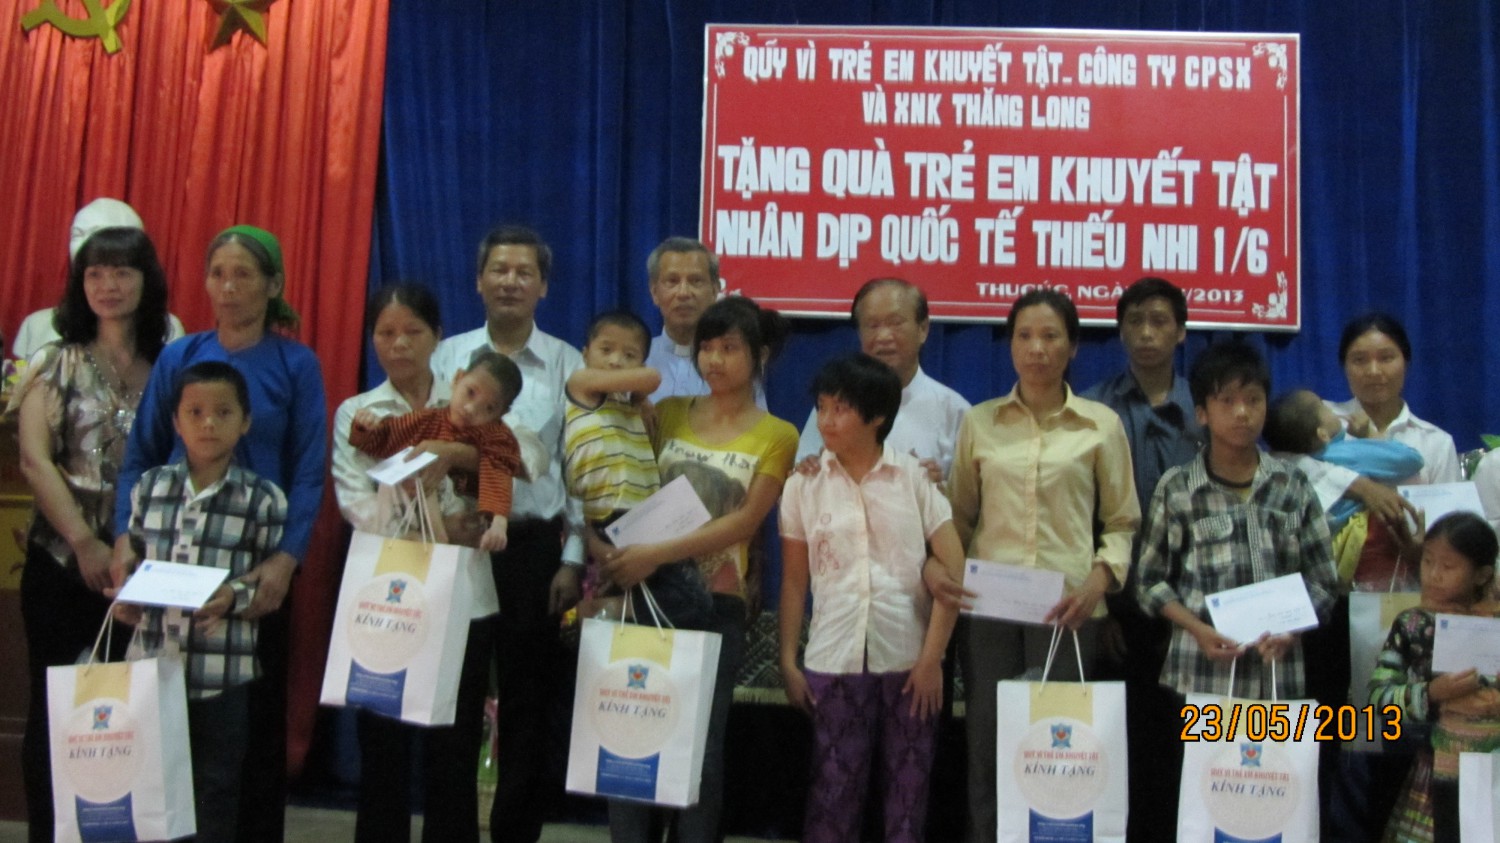 Quỹ vì trẻ em khuyết tật phối hợp Công ty cổ phần Sản xuất và xnk Thăng Long thăm và tặng quà trẻ khuyết tật nhân dịp 01-6-2013